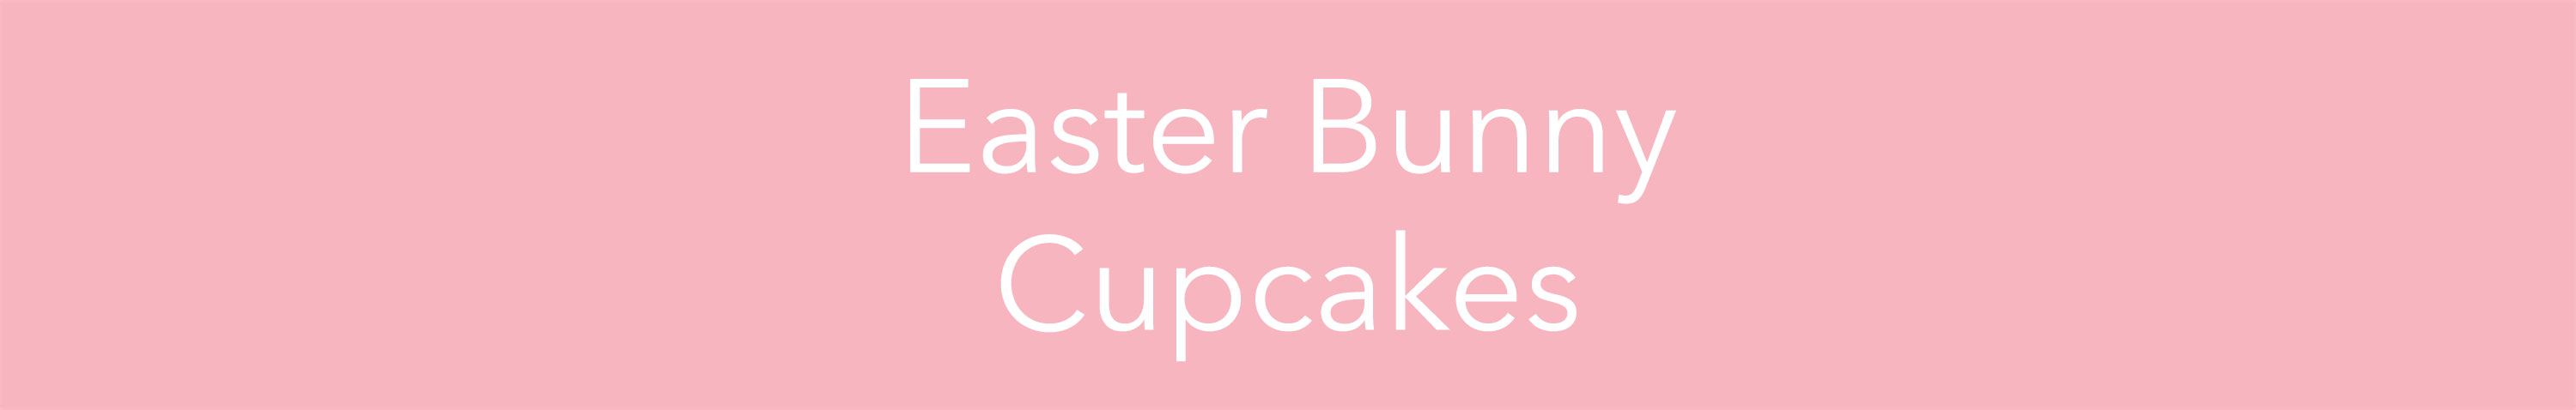 easterbunnycupcakes-instagram